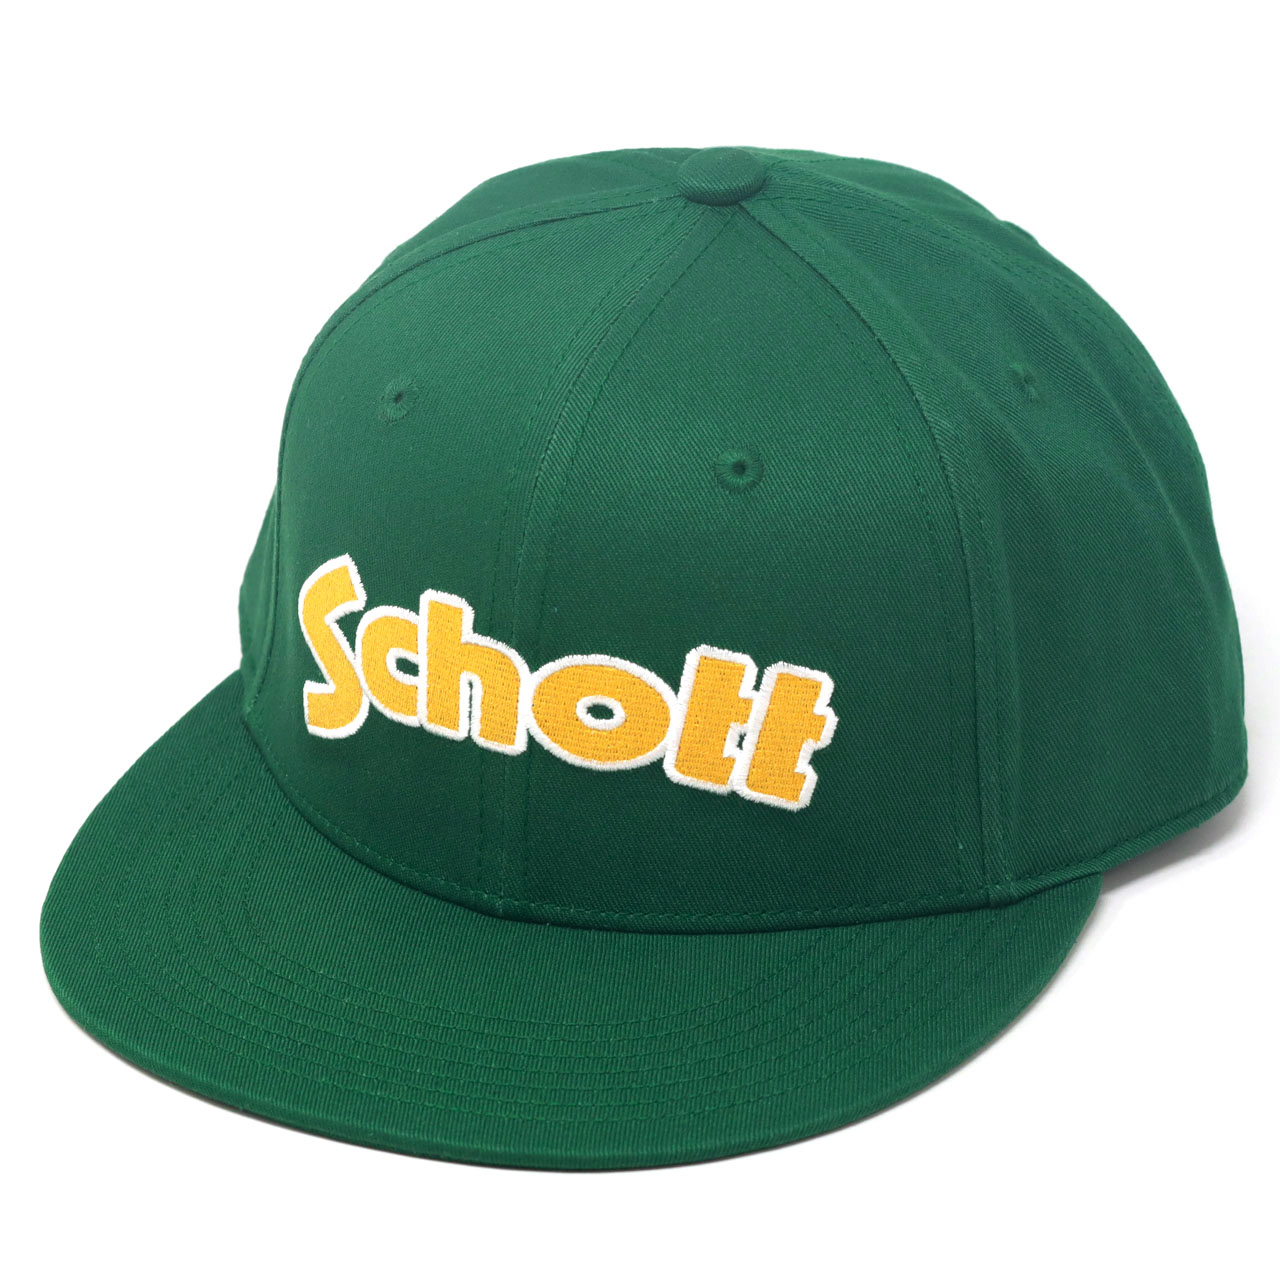 フラット キャップ ブランド Schott N.Y.C ショット メンズ フリーサイズ 帽子 キャッ...